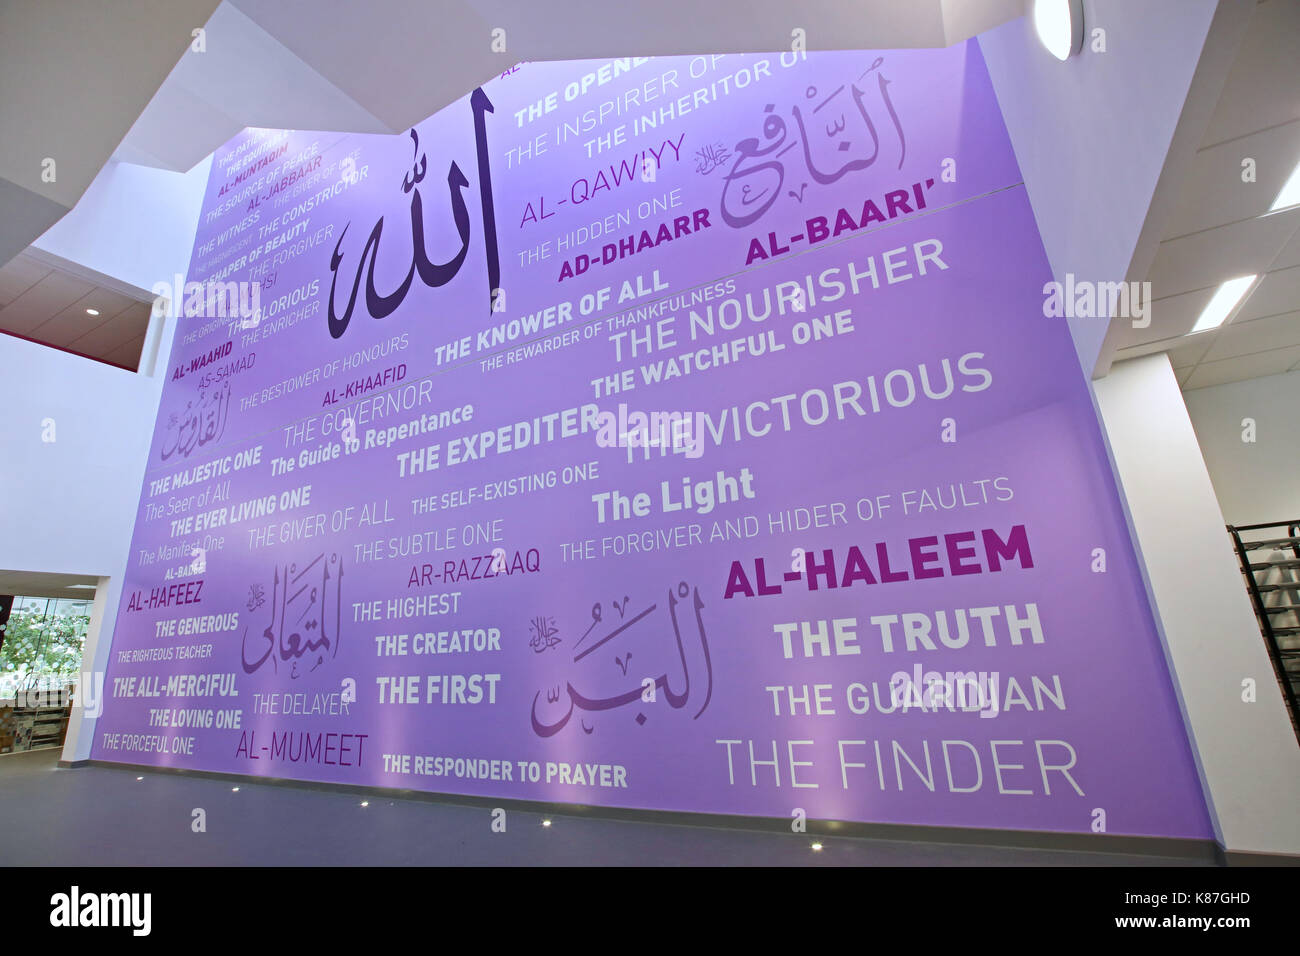 A tre piani con un murale sulla parete dell'atrio di una nuova fede islamica School di Londra. visualizza le descrizioni del profeta in inglese e il testo arabo. Foto Stock